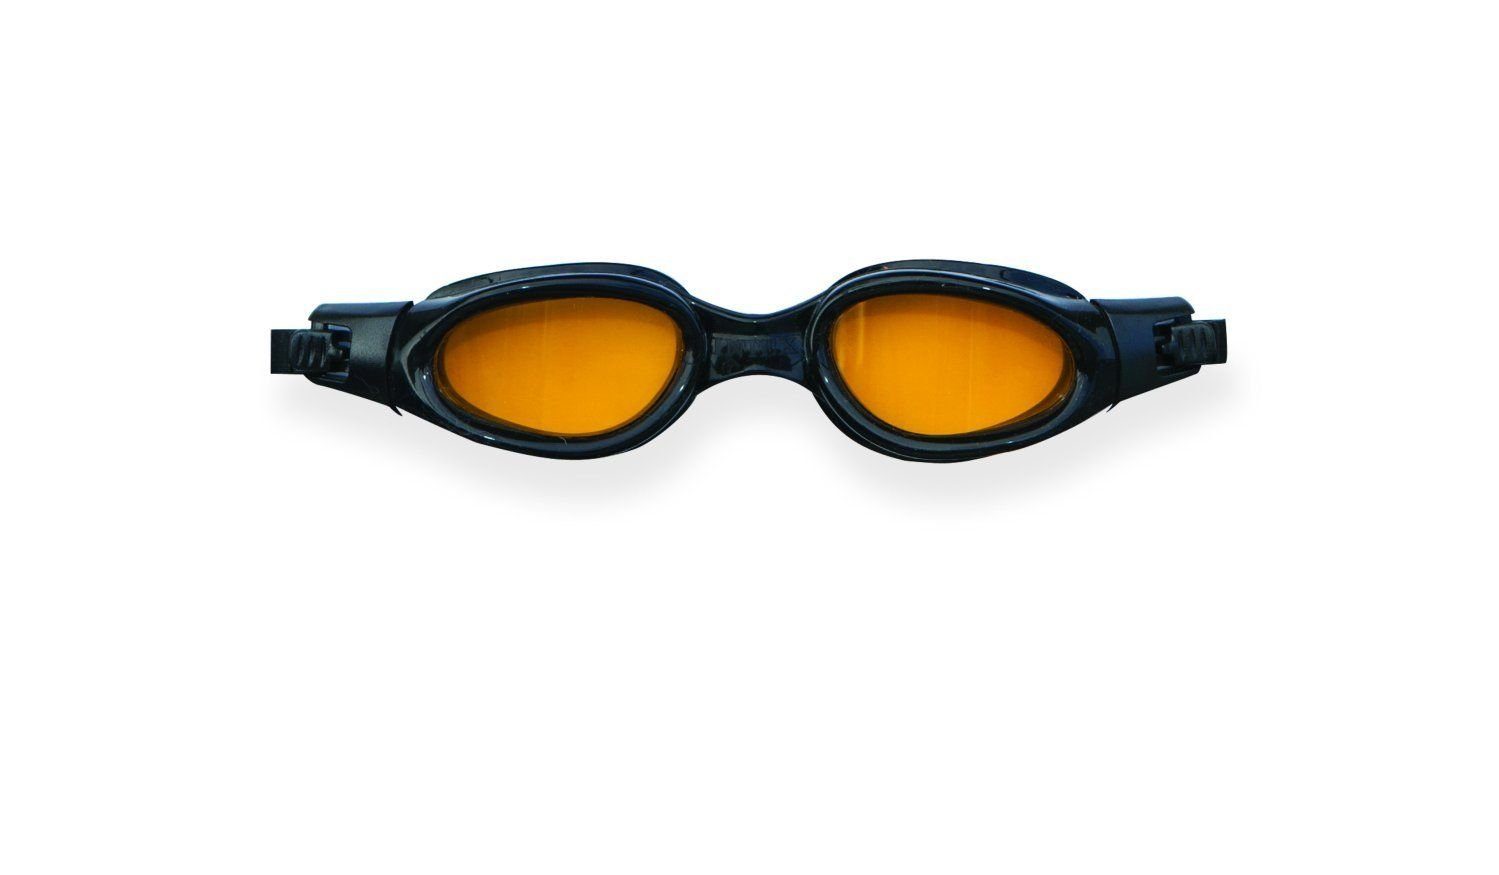 Intex Taucherbrille, (1-St)